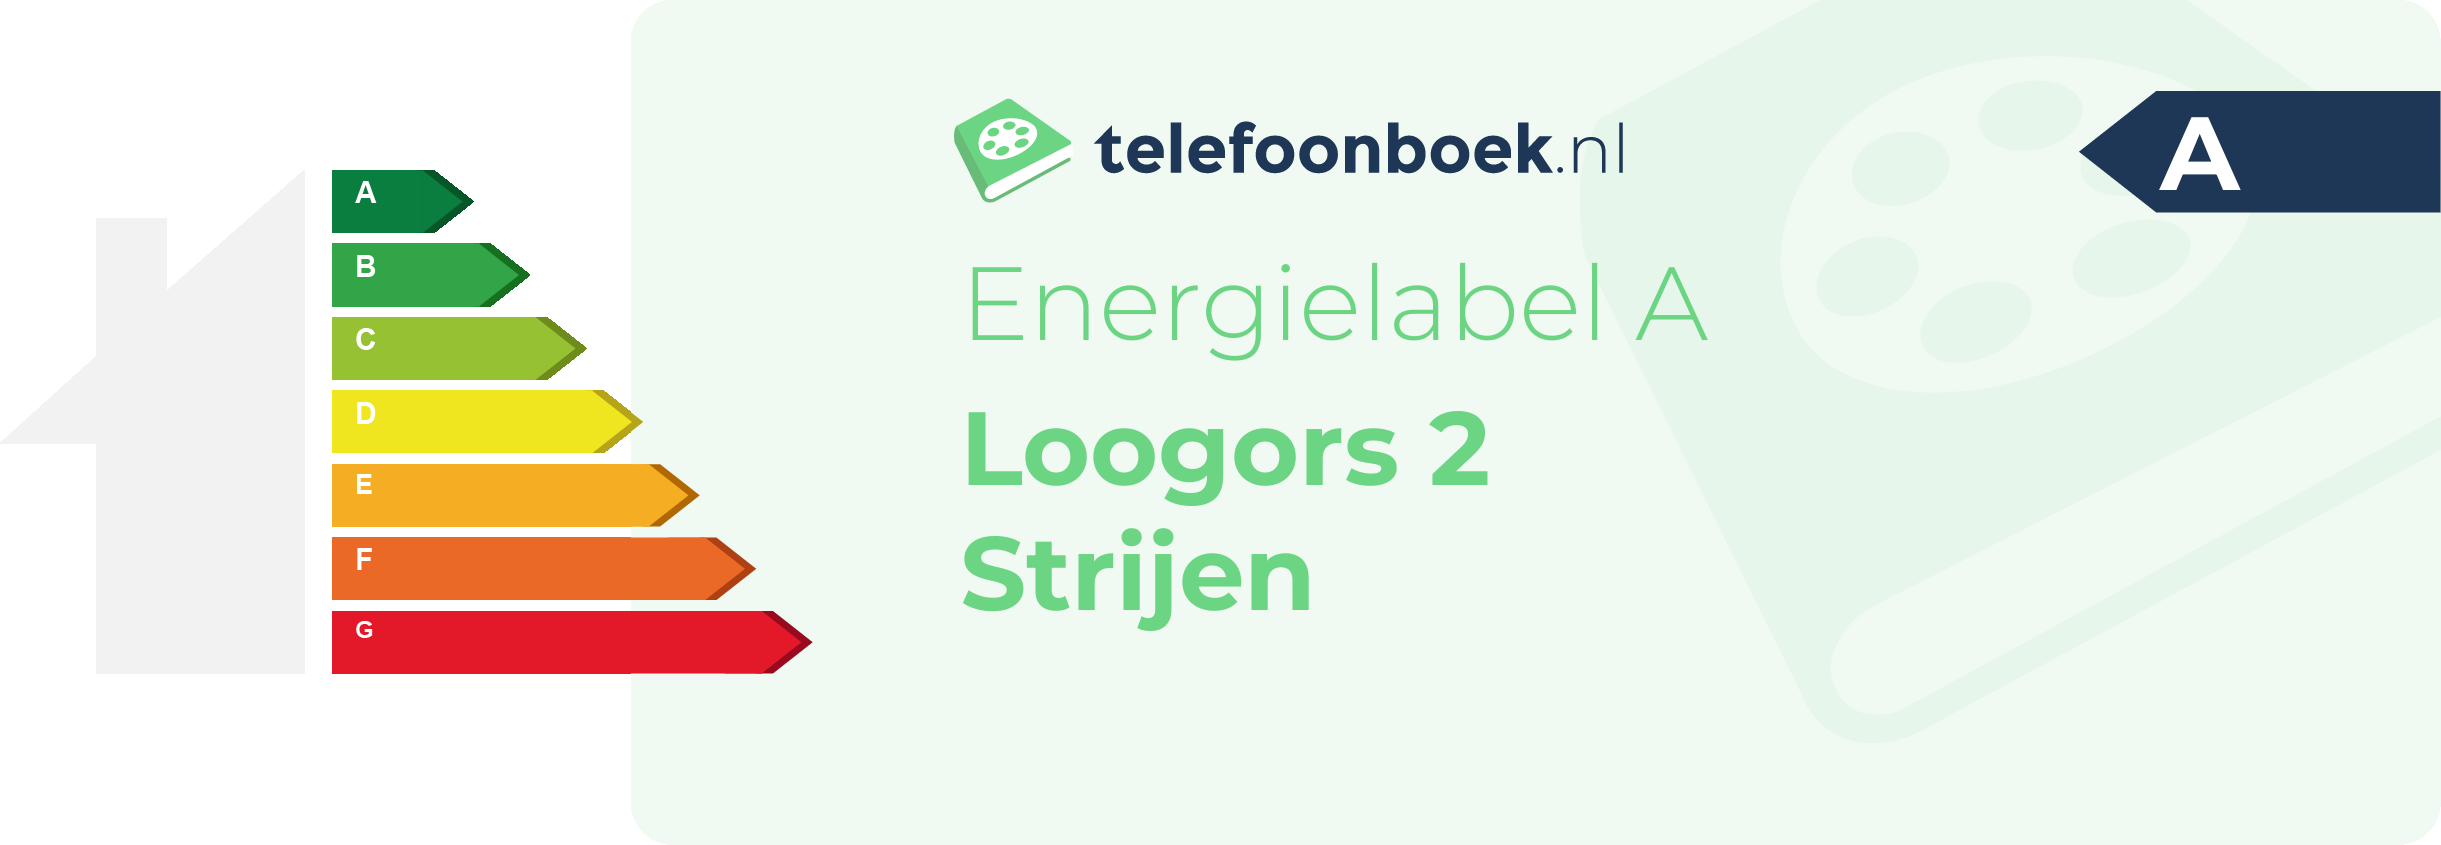 Energielabel Loogors 2 Strijen